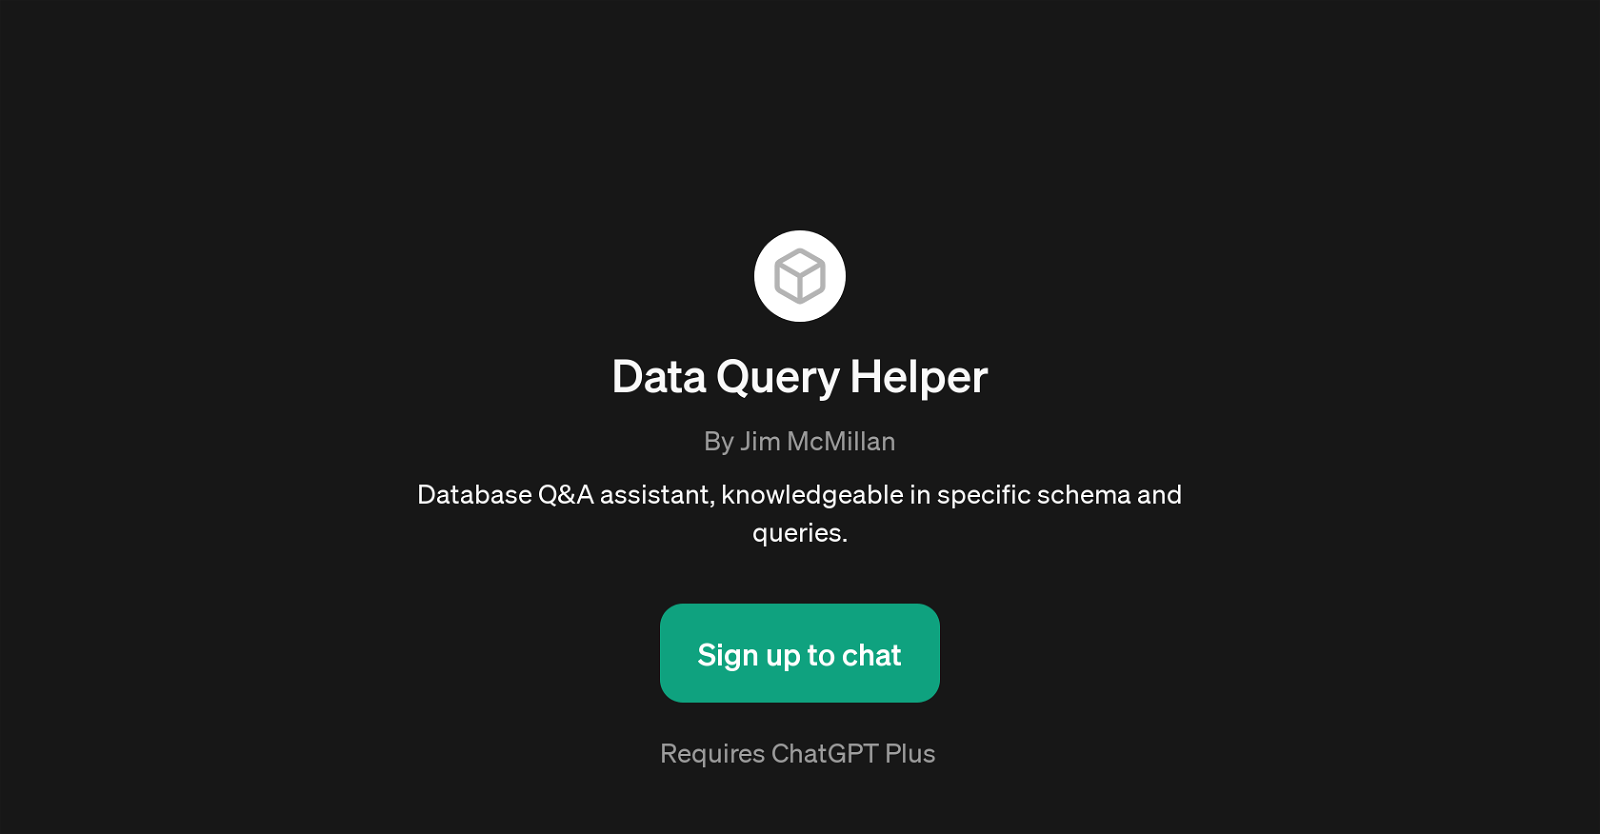 Data Query Helper website